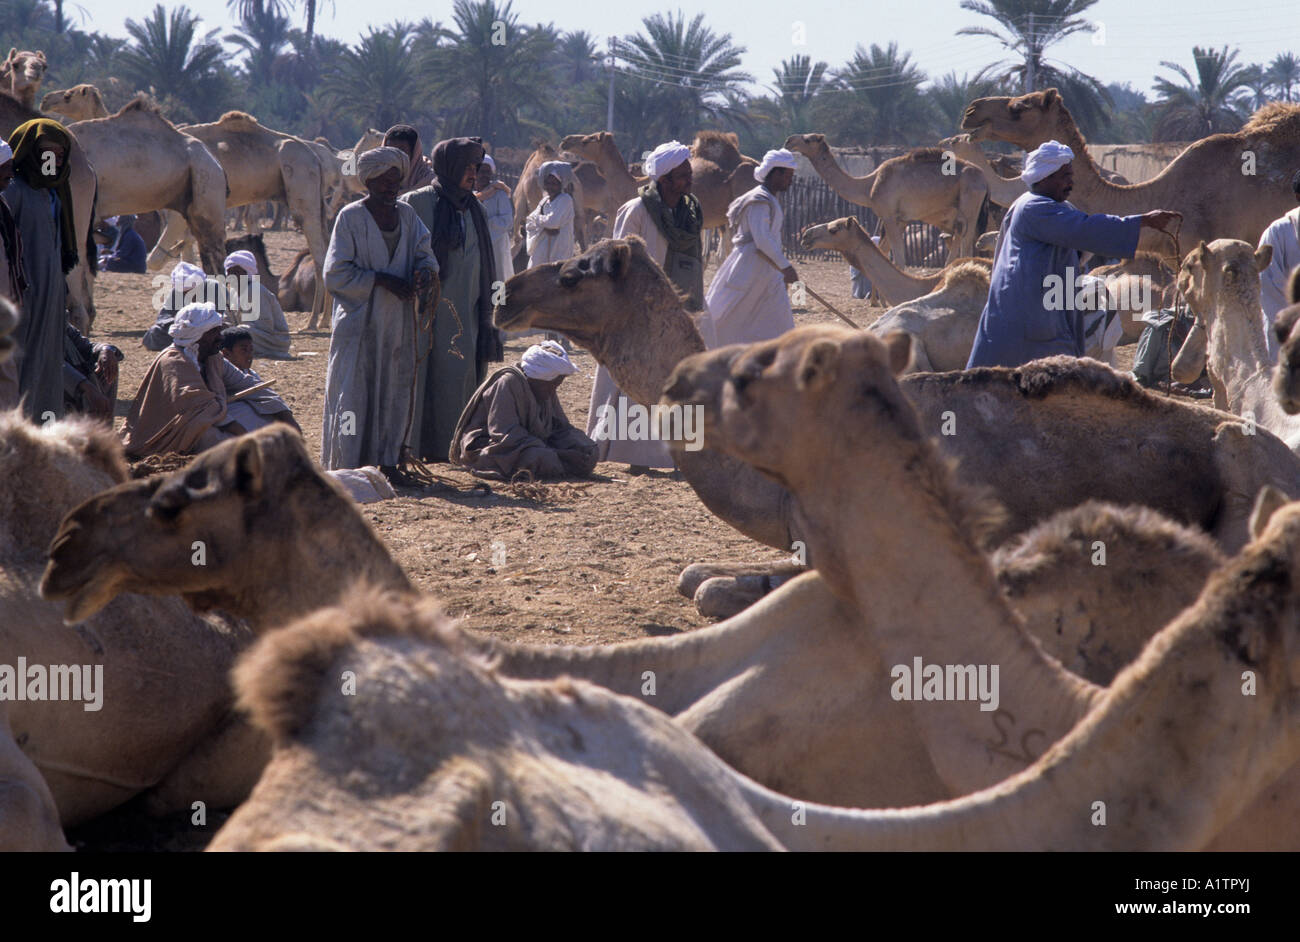 Camel market Kum Umbu Egypt Stock Photo